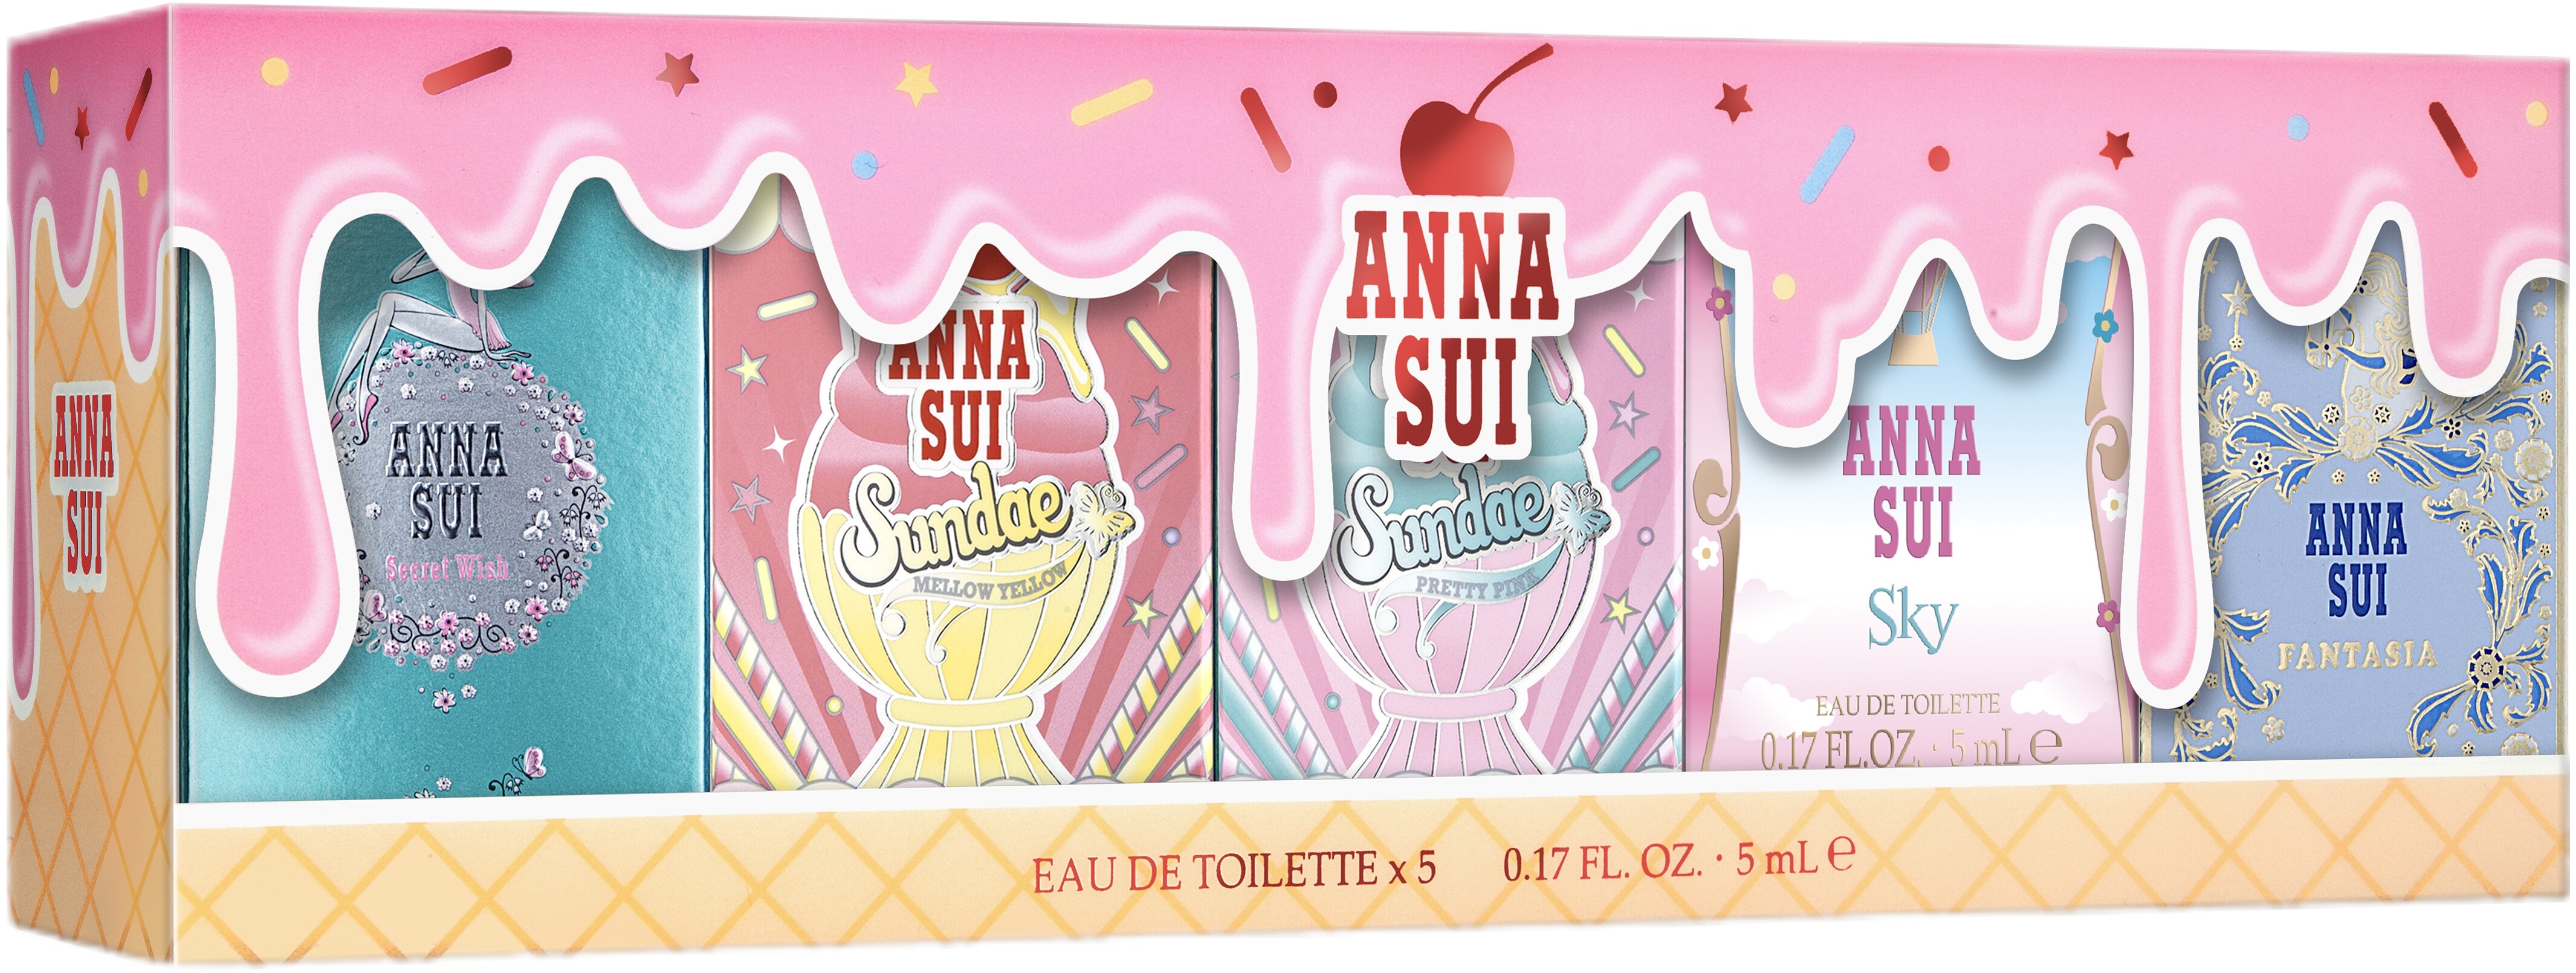 Anna Sui Compact Mini Set